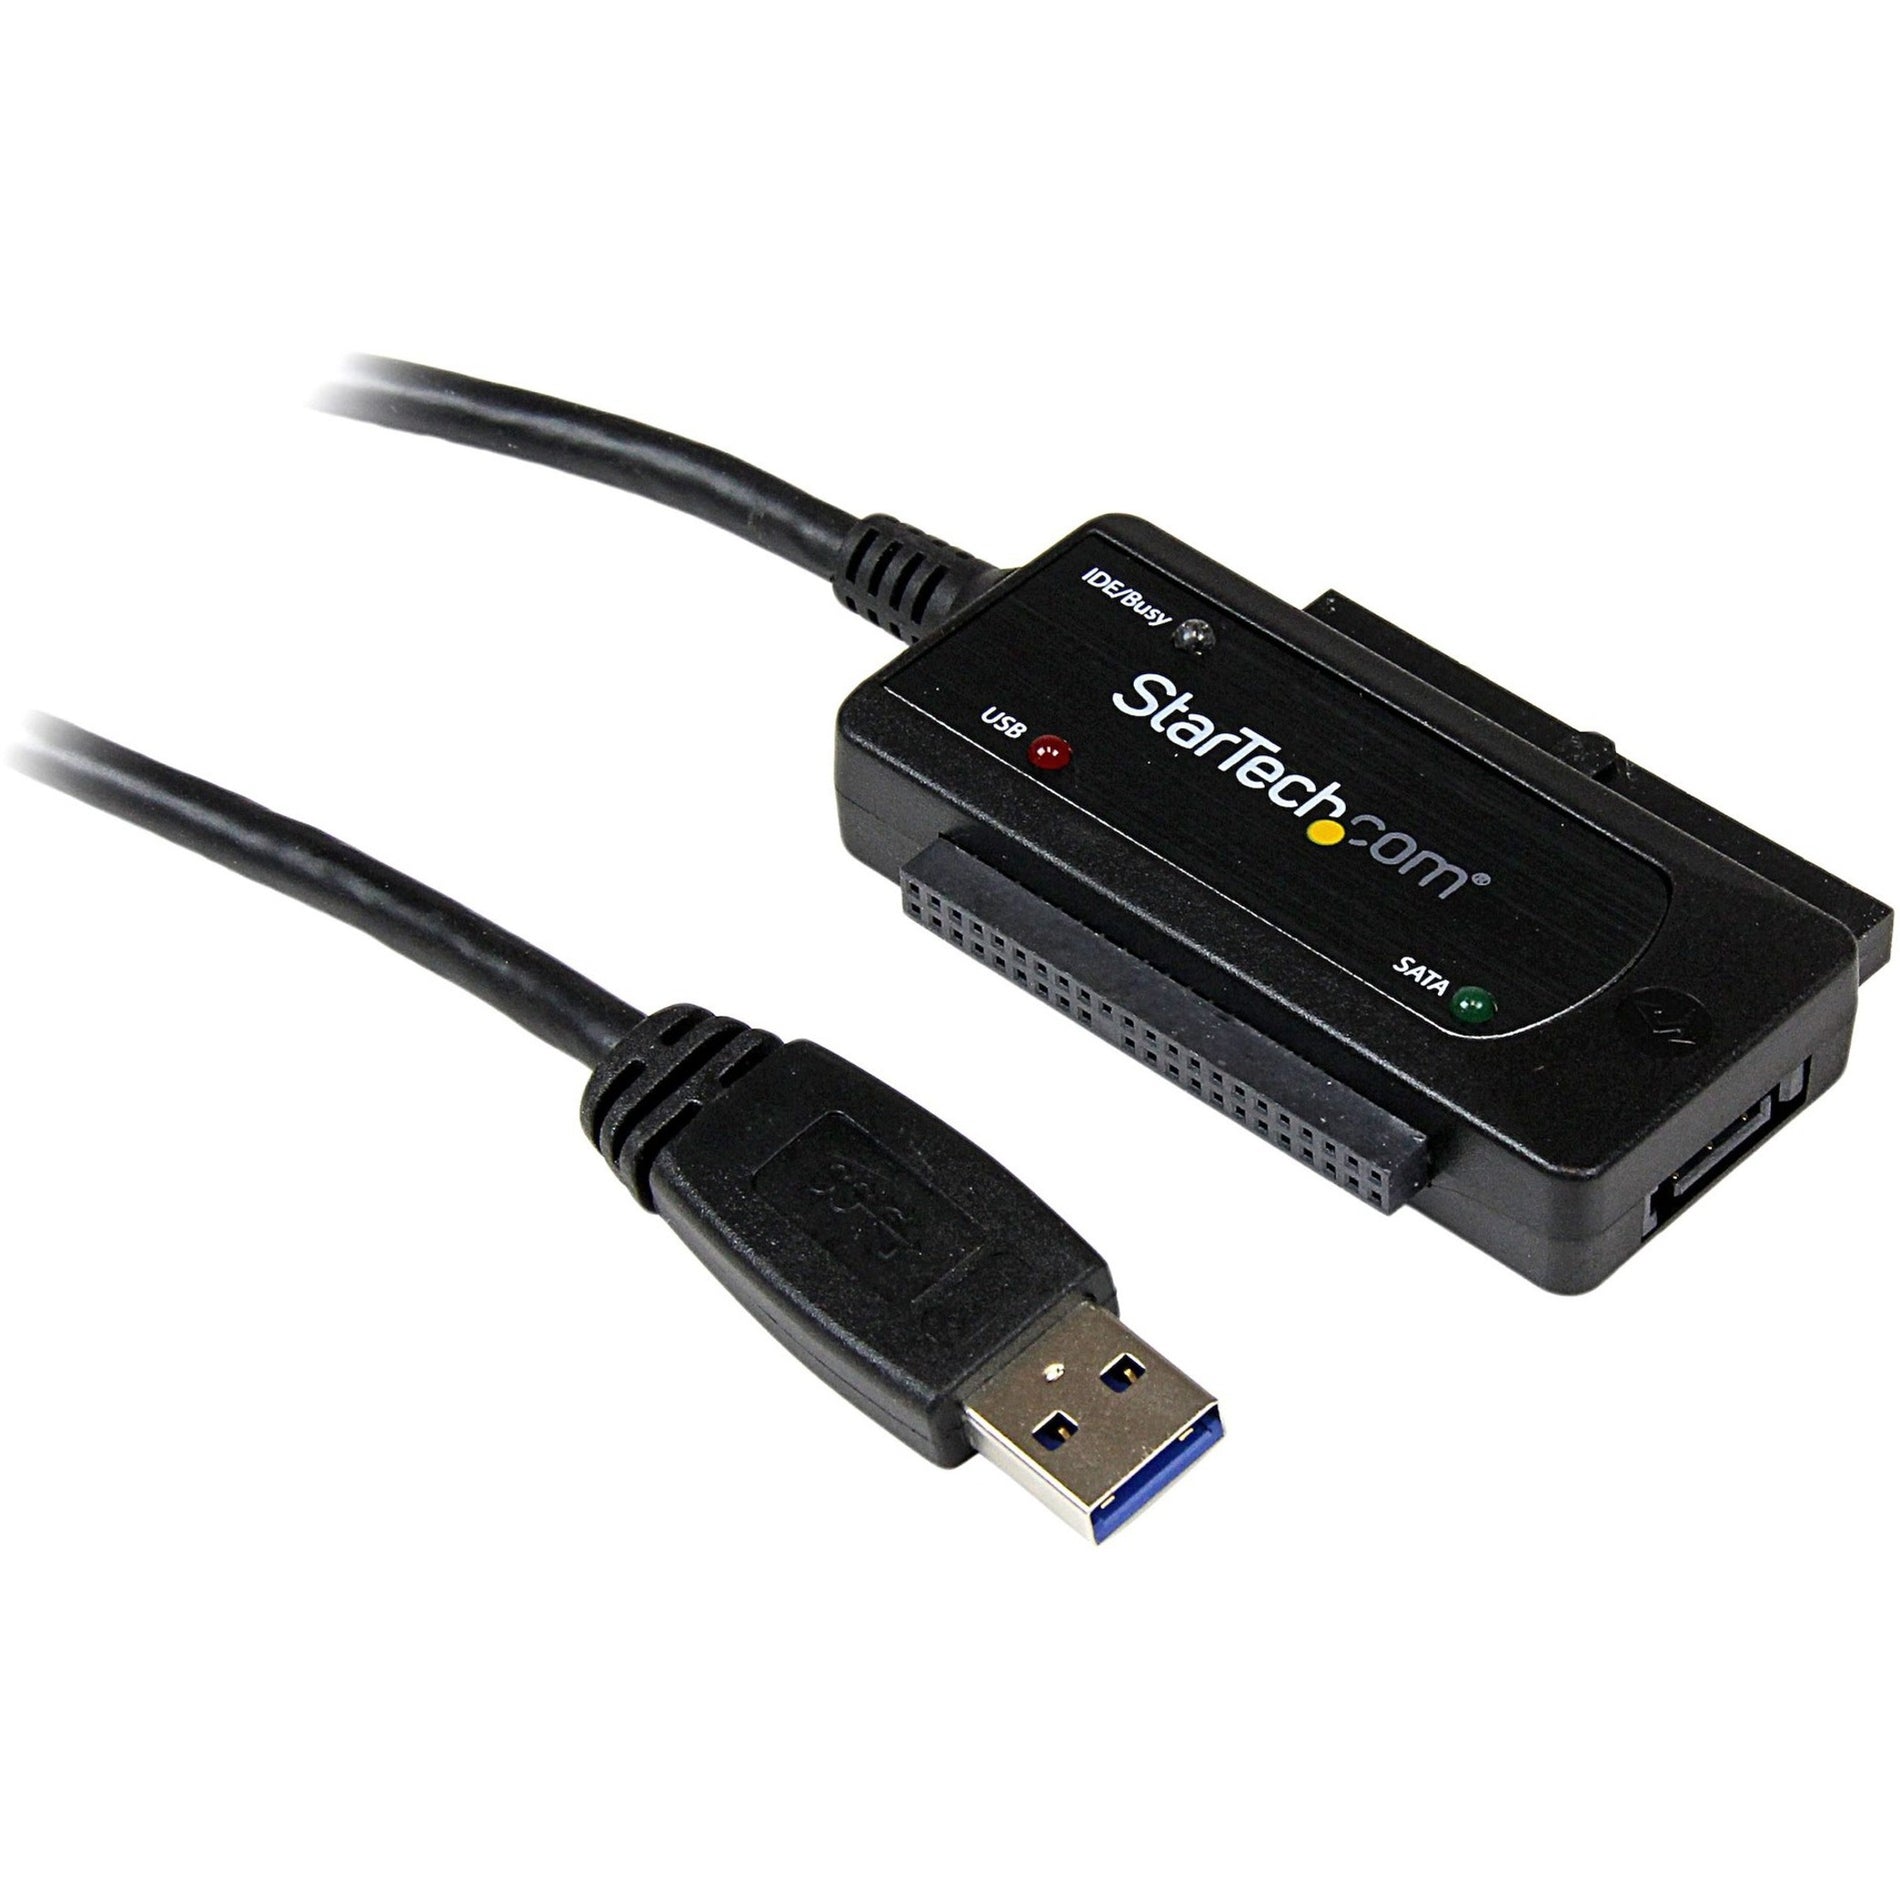 Marca: StarTech.com Adaptador de disco duro USB 3.0 a SATA o IDE Convertidor de alta velocidad de transferencia de datos